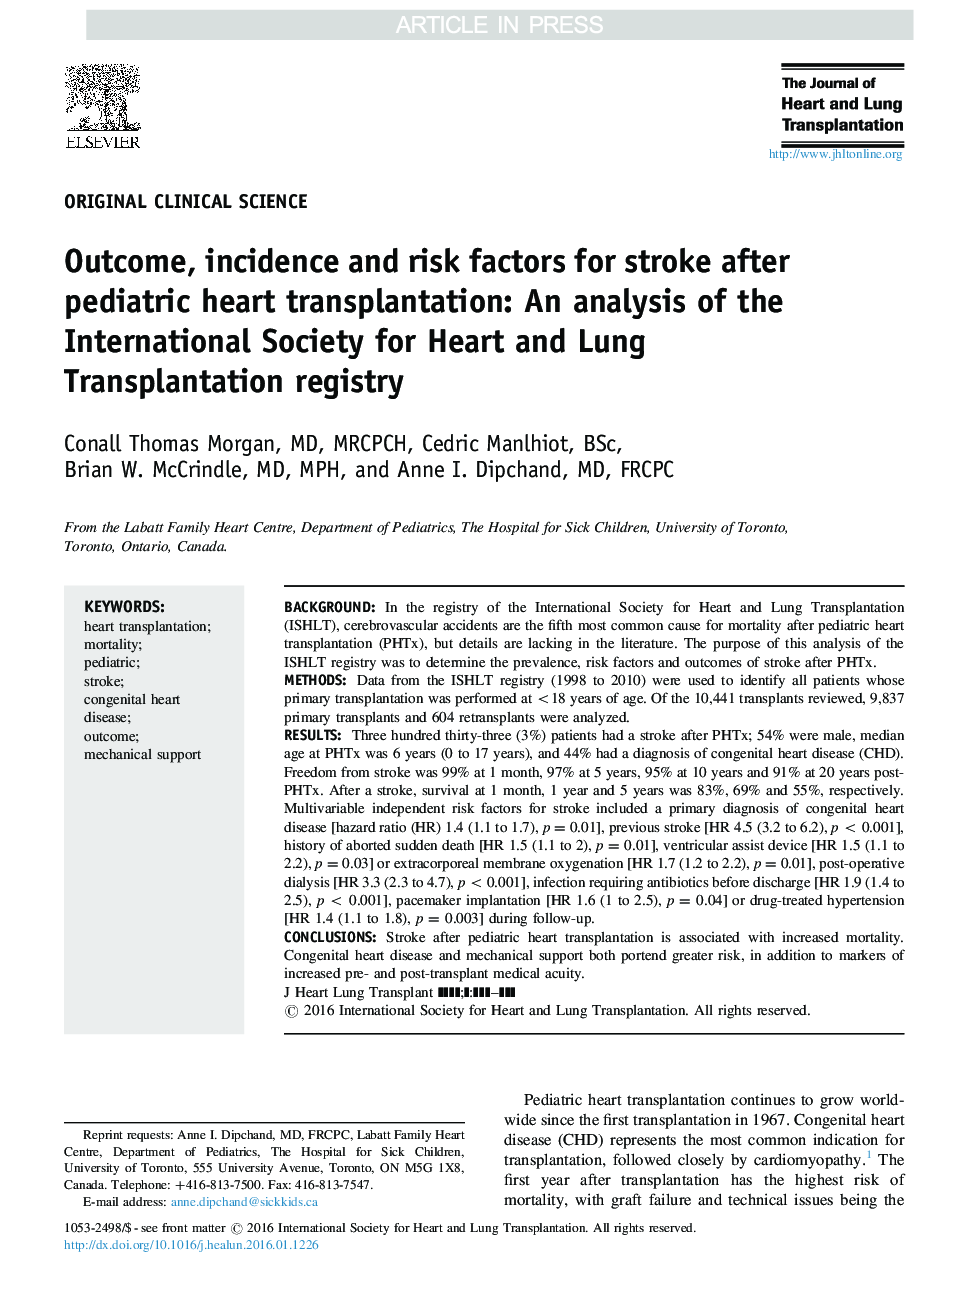 نتیجه، بروز و عوامل خطر سکته مغزی پس از پیوند قلب کودکان: یک تجزیه و تحلیل از انجمن بین المللی قلبی و ریه پیگیری رجیستری 